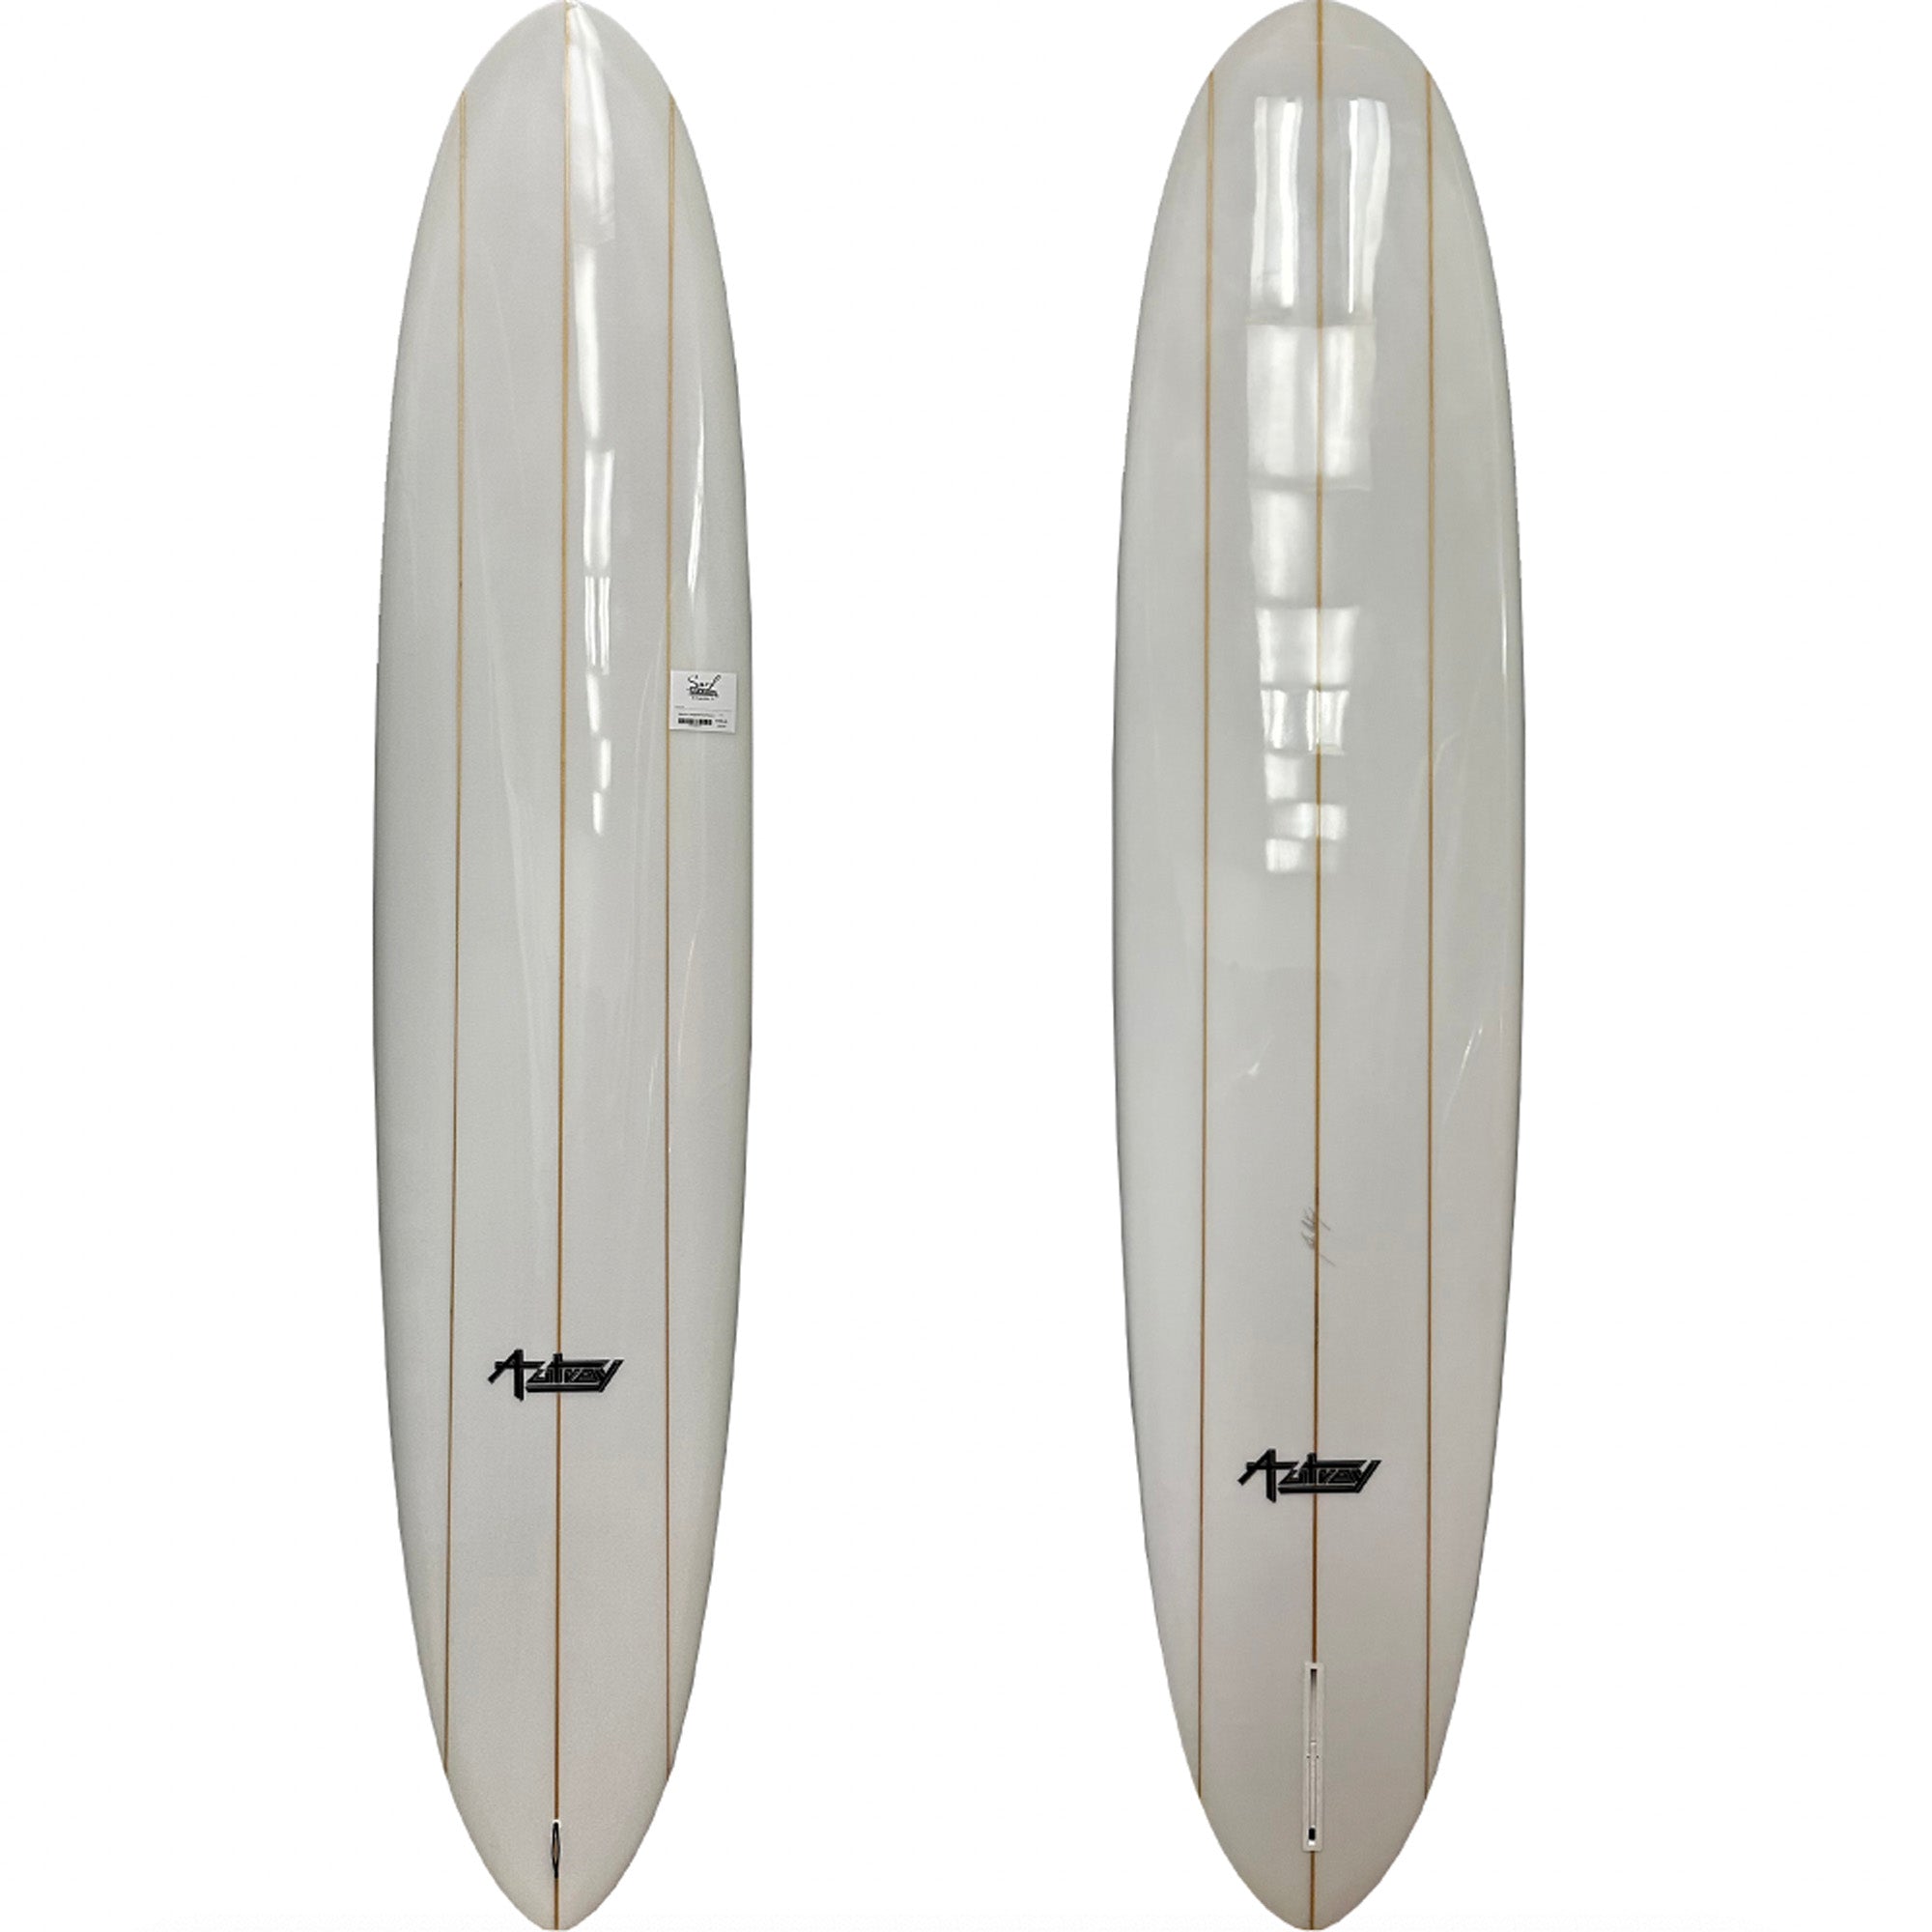 Warrior Longboard Surfboard